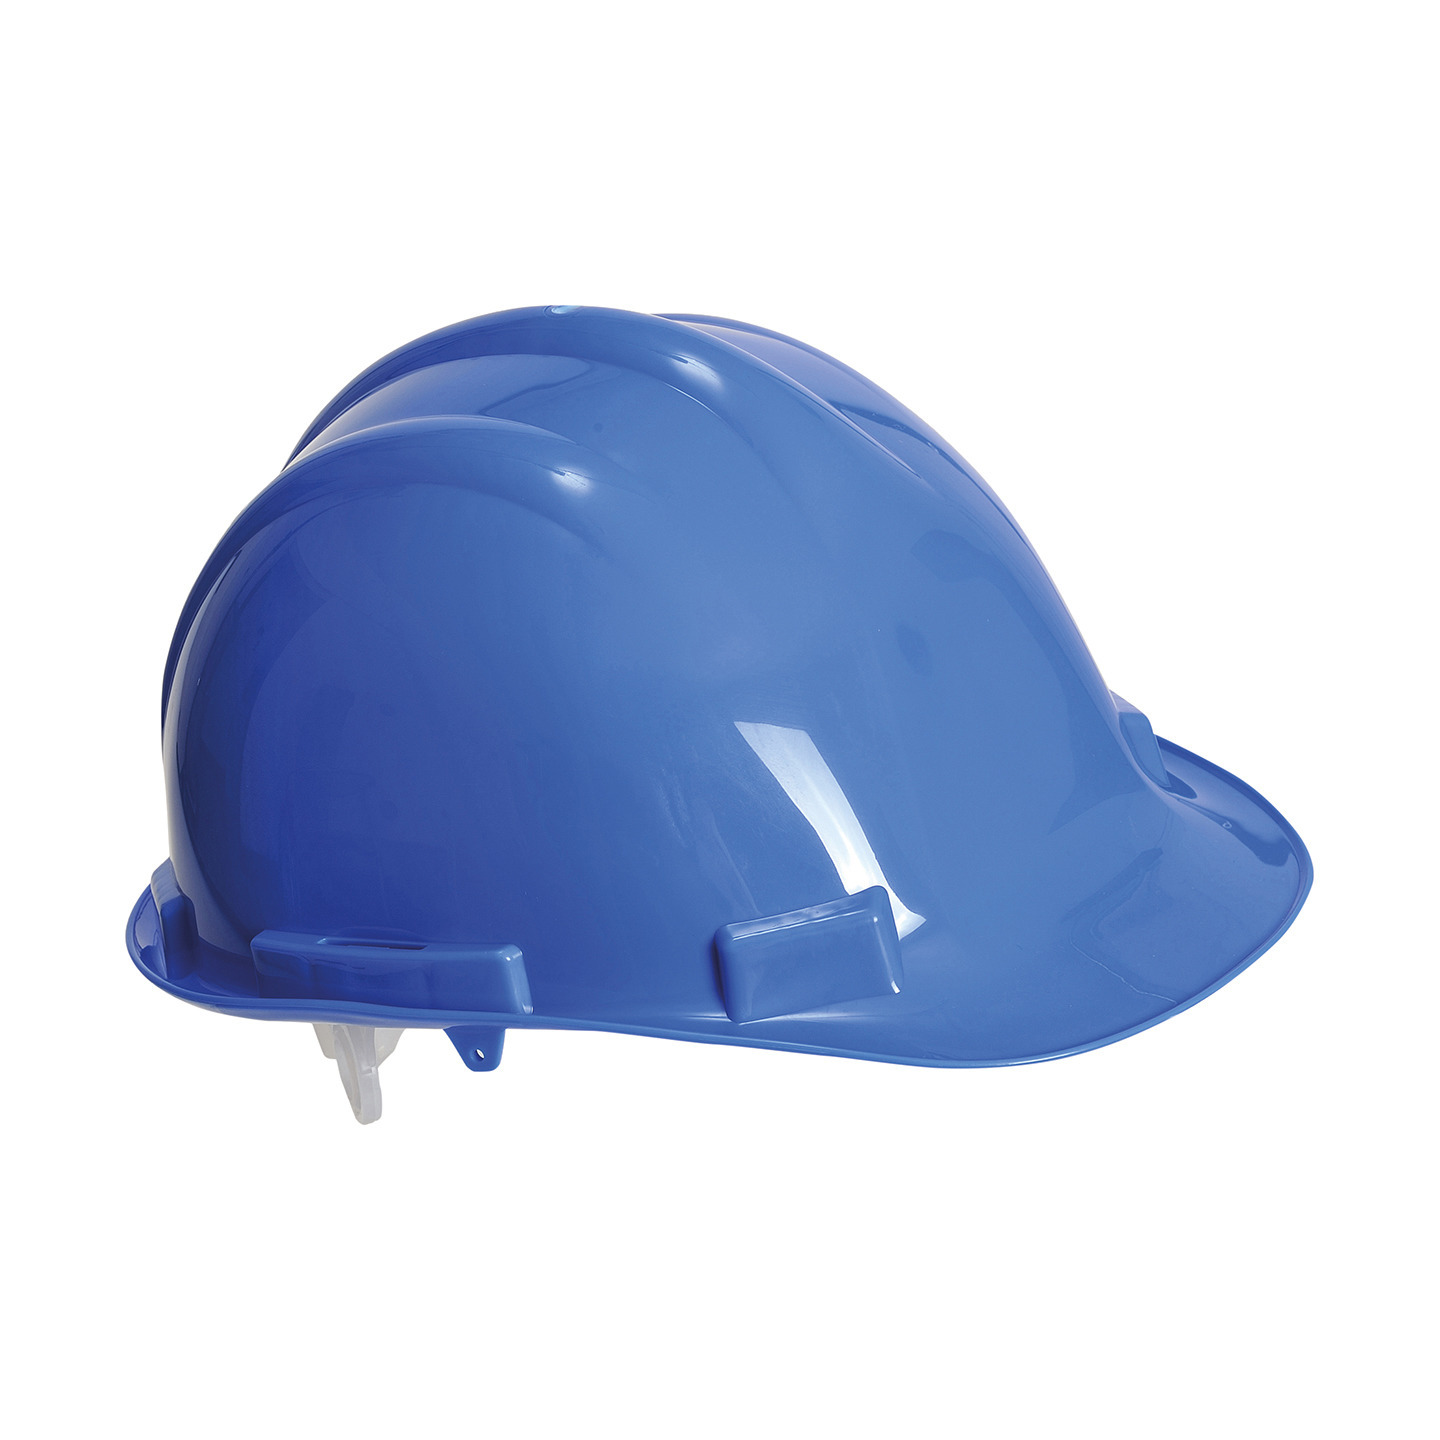 Veiligheidshelm/bouwhelm hoofdbescherming blauw verstelbaar 55-62 cm